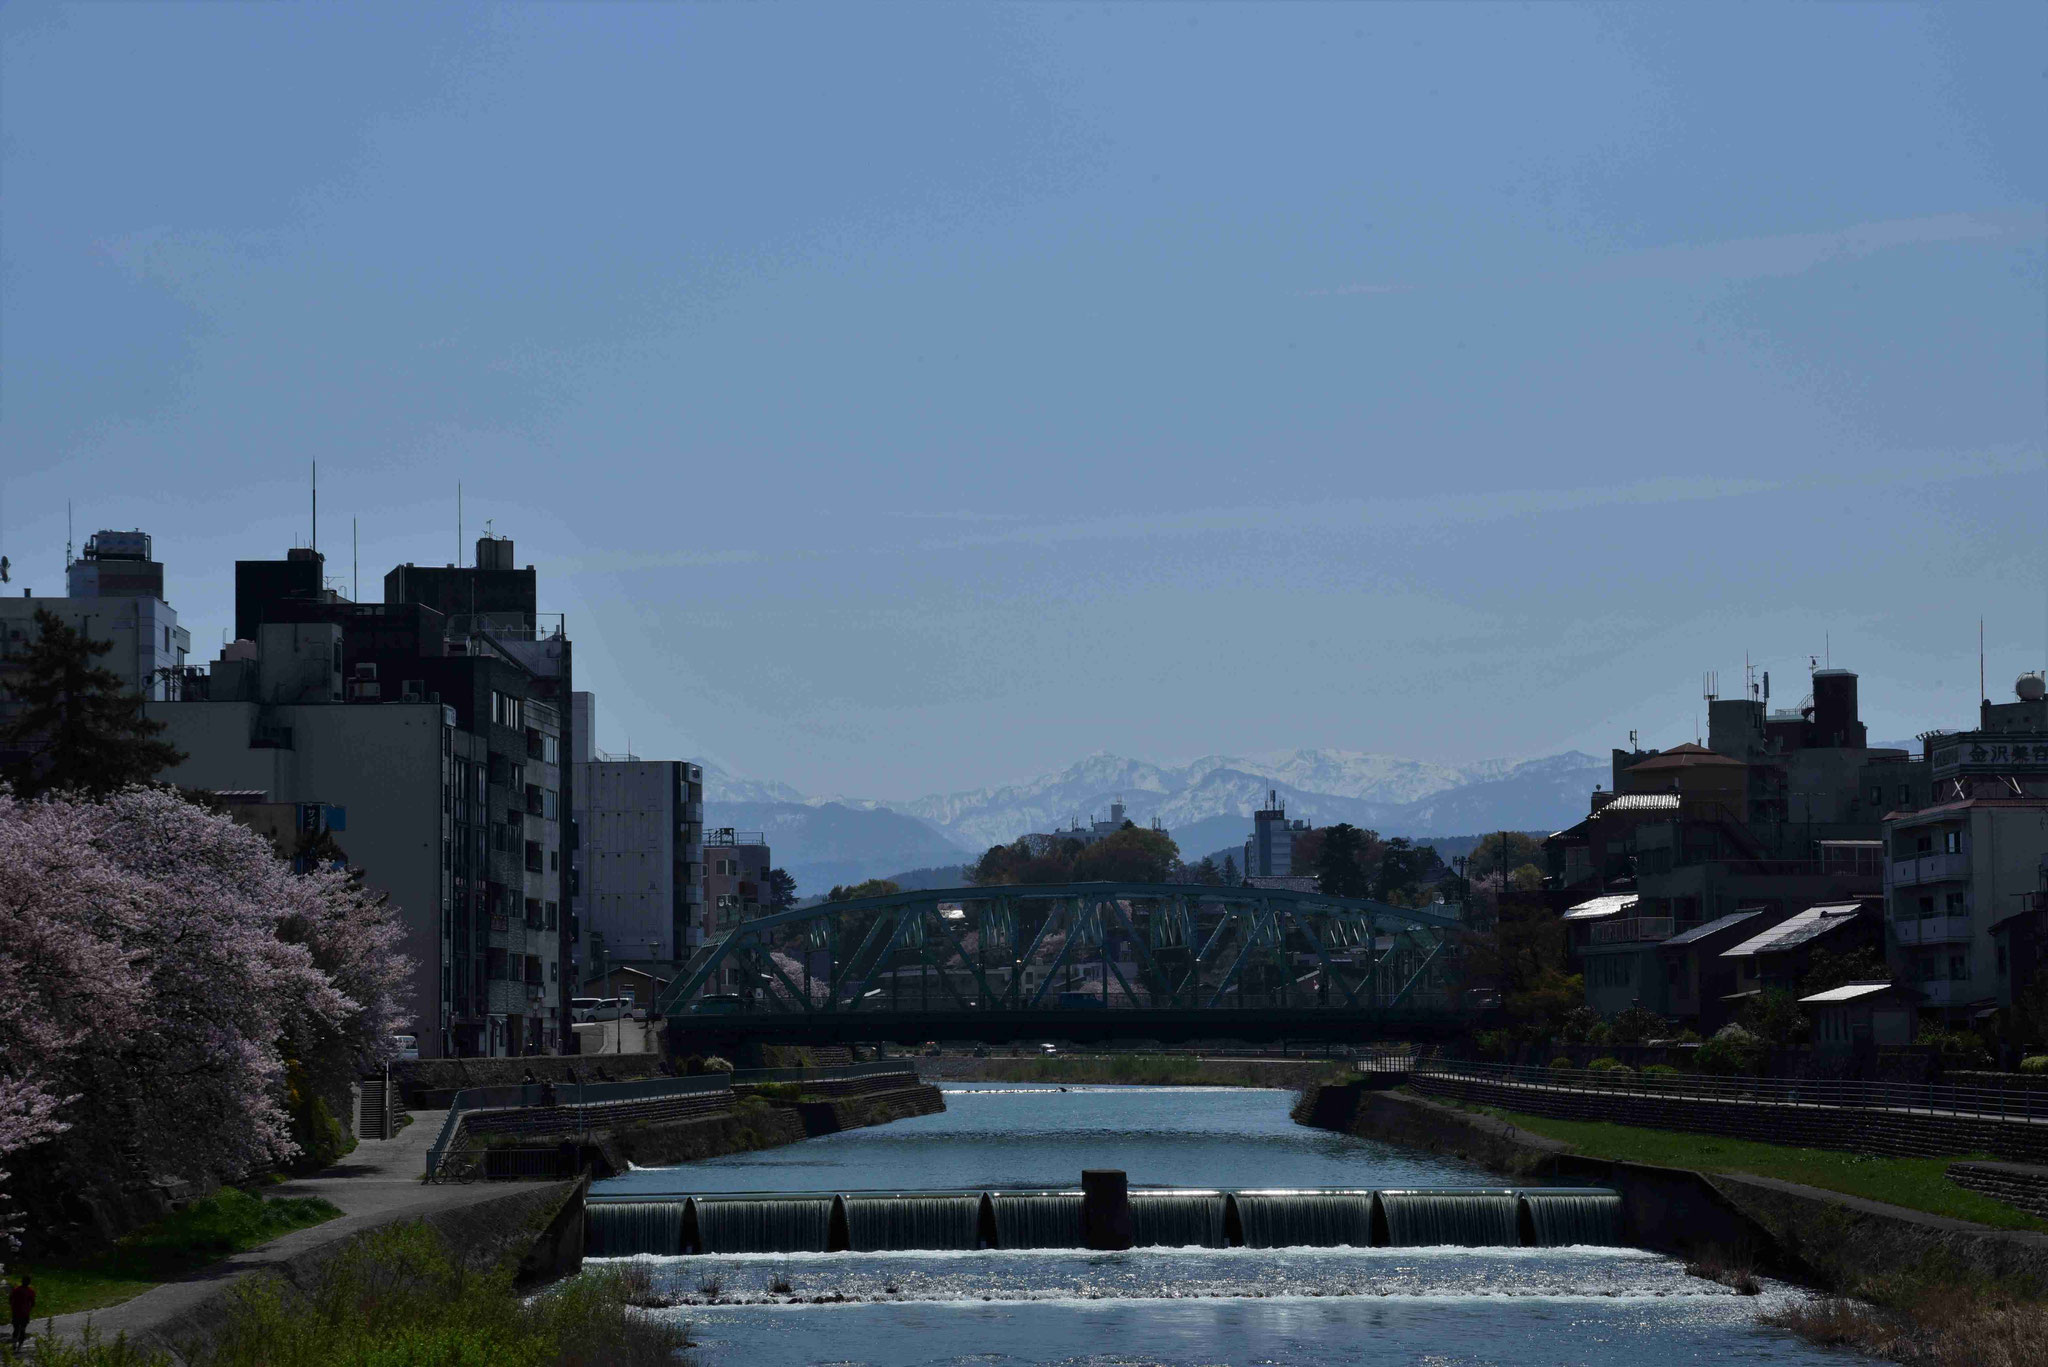 Blick auf die Berge - irgendwo da hinten könnte Shirakawa-go liegen